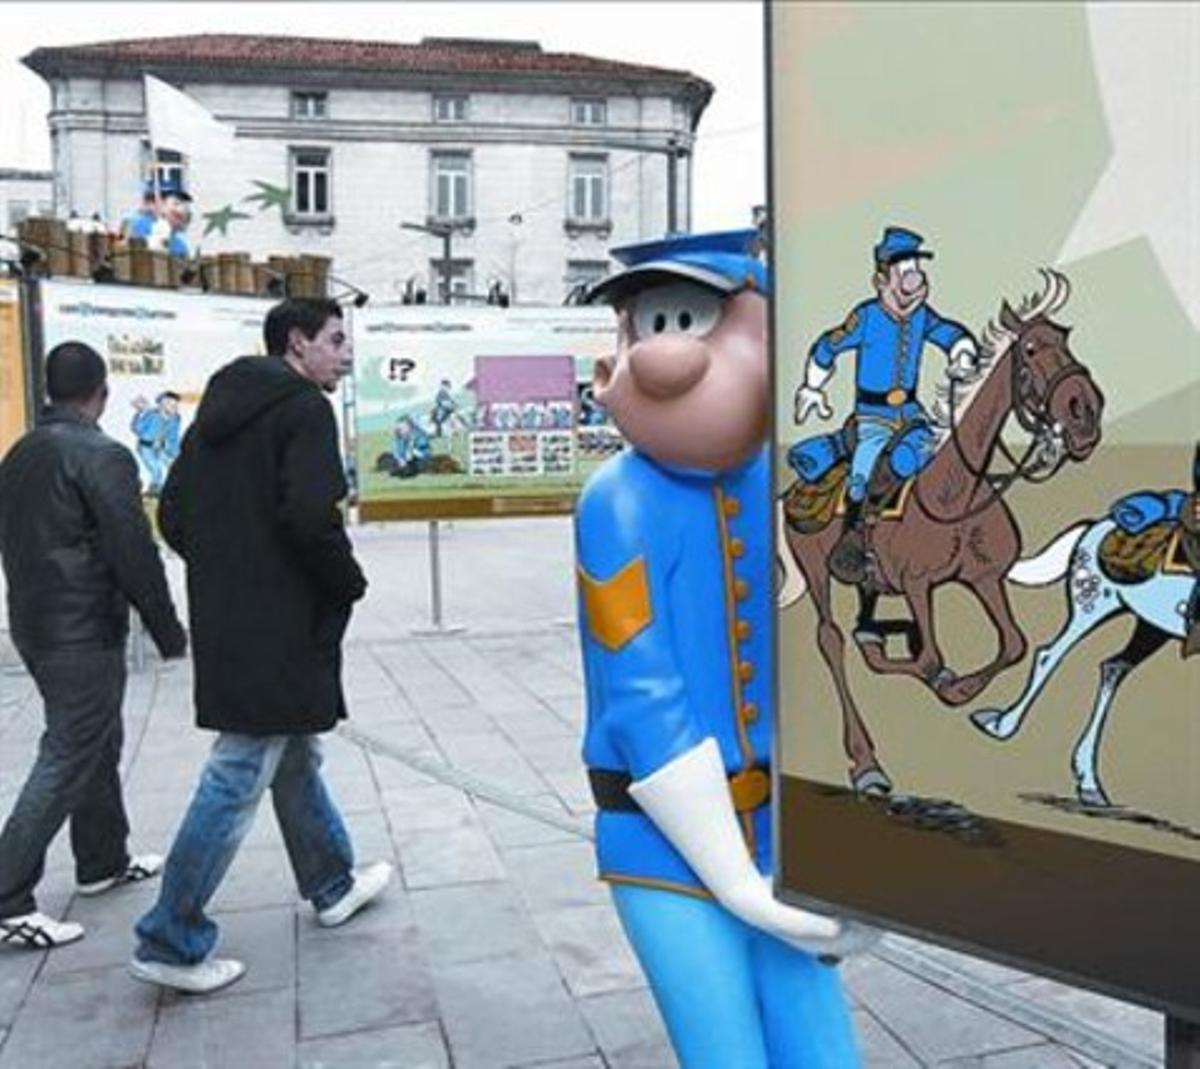 Uns ninots, al carrer, recreen el famós còmic ’Casacas azules’.